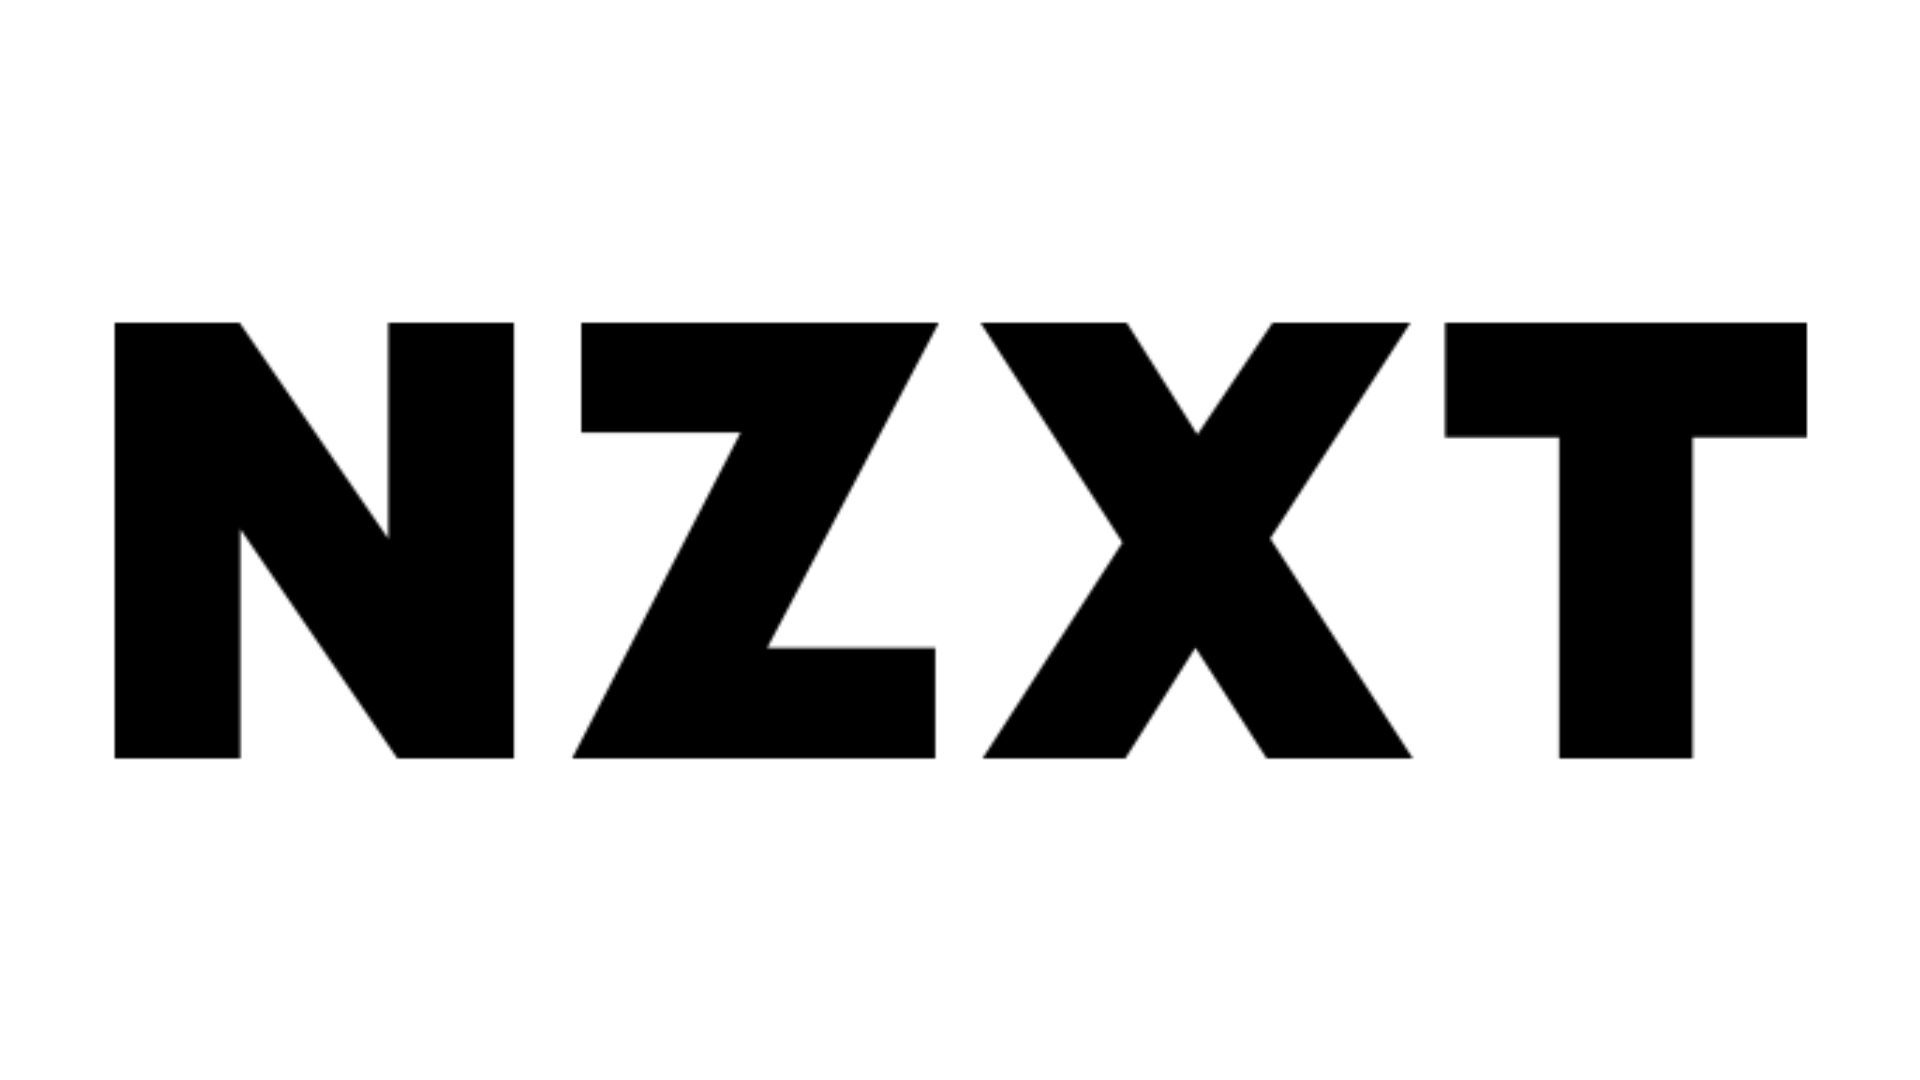 Meilleurs sites Web pour les versions de PC personnalisées, numéro 2: NZXT. Le logo est sur fond noir